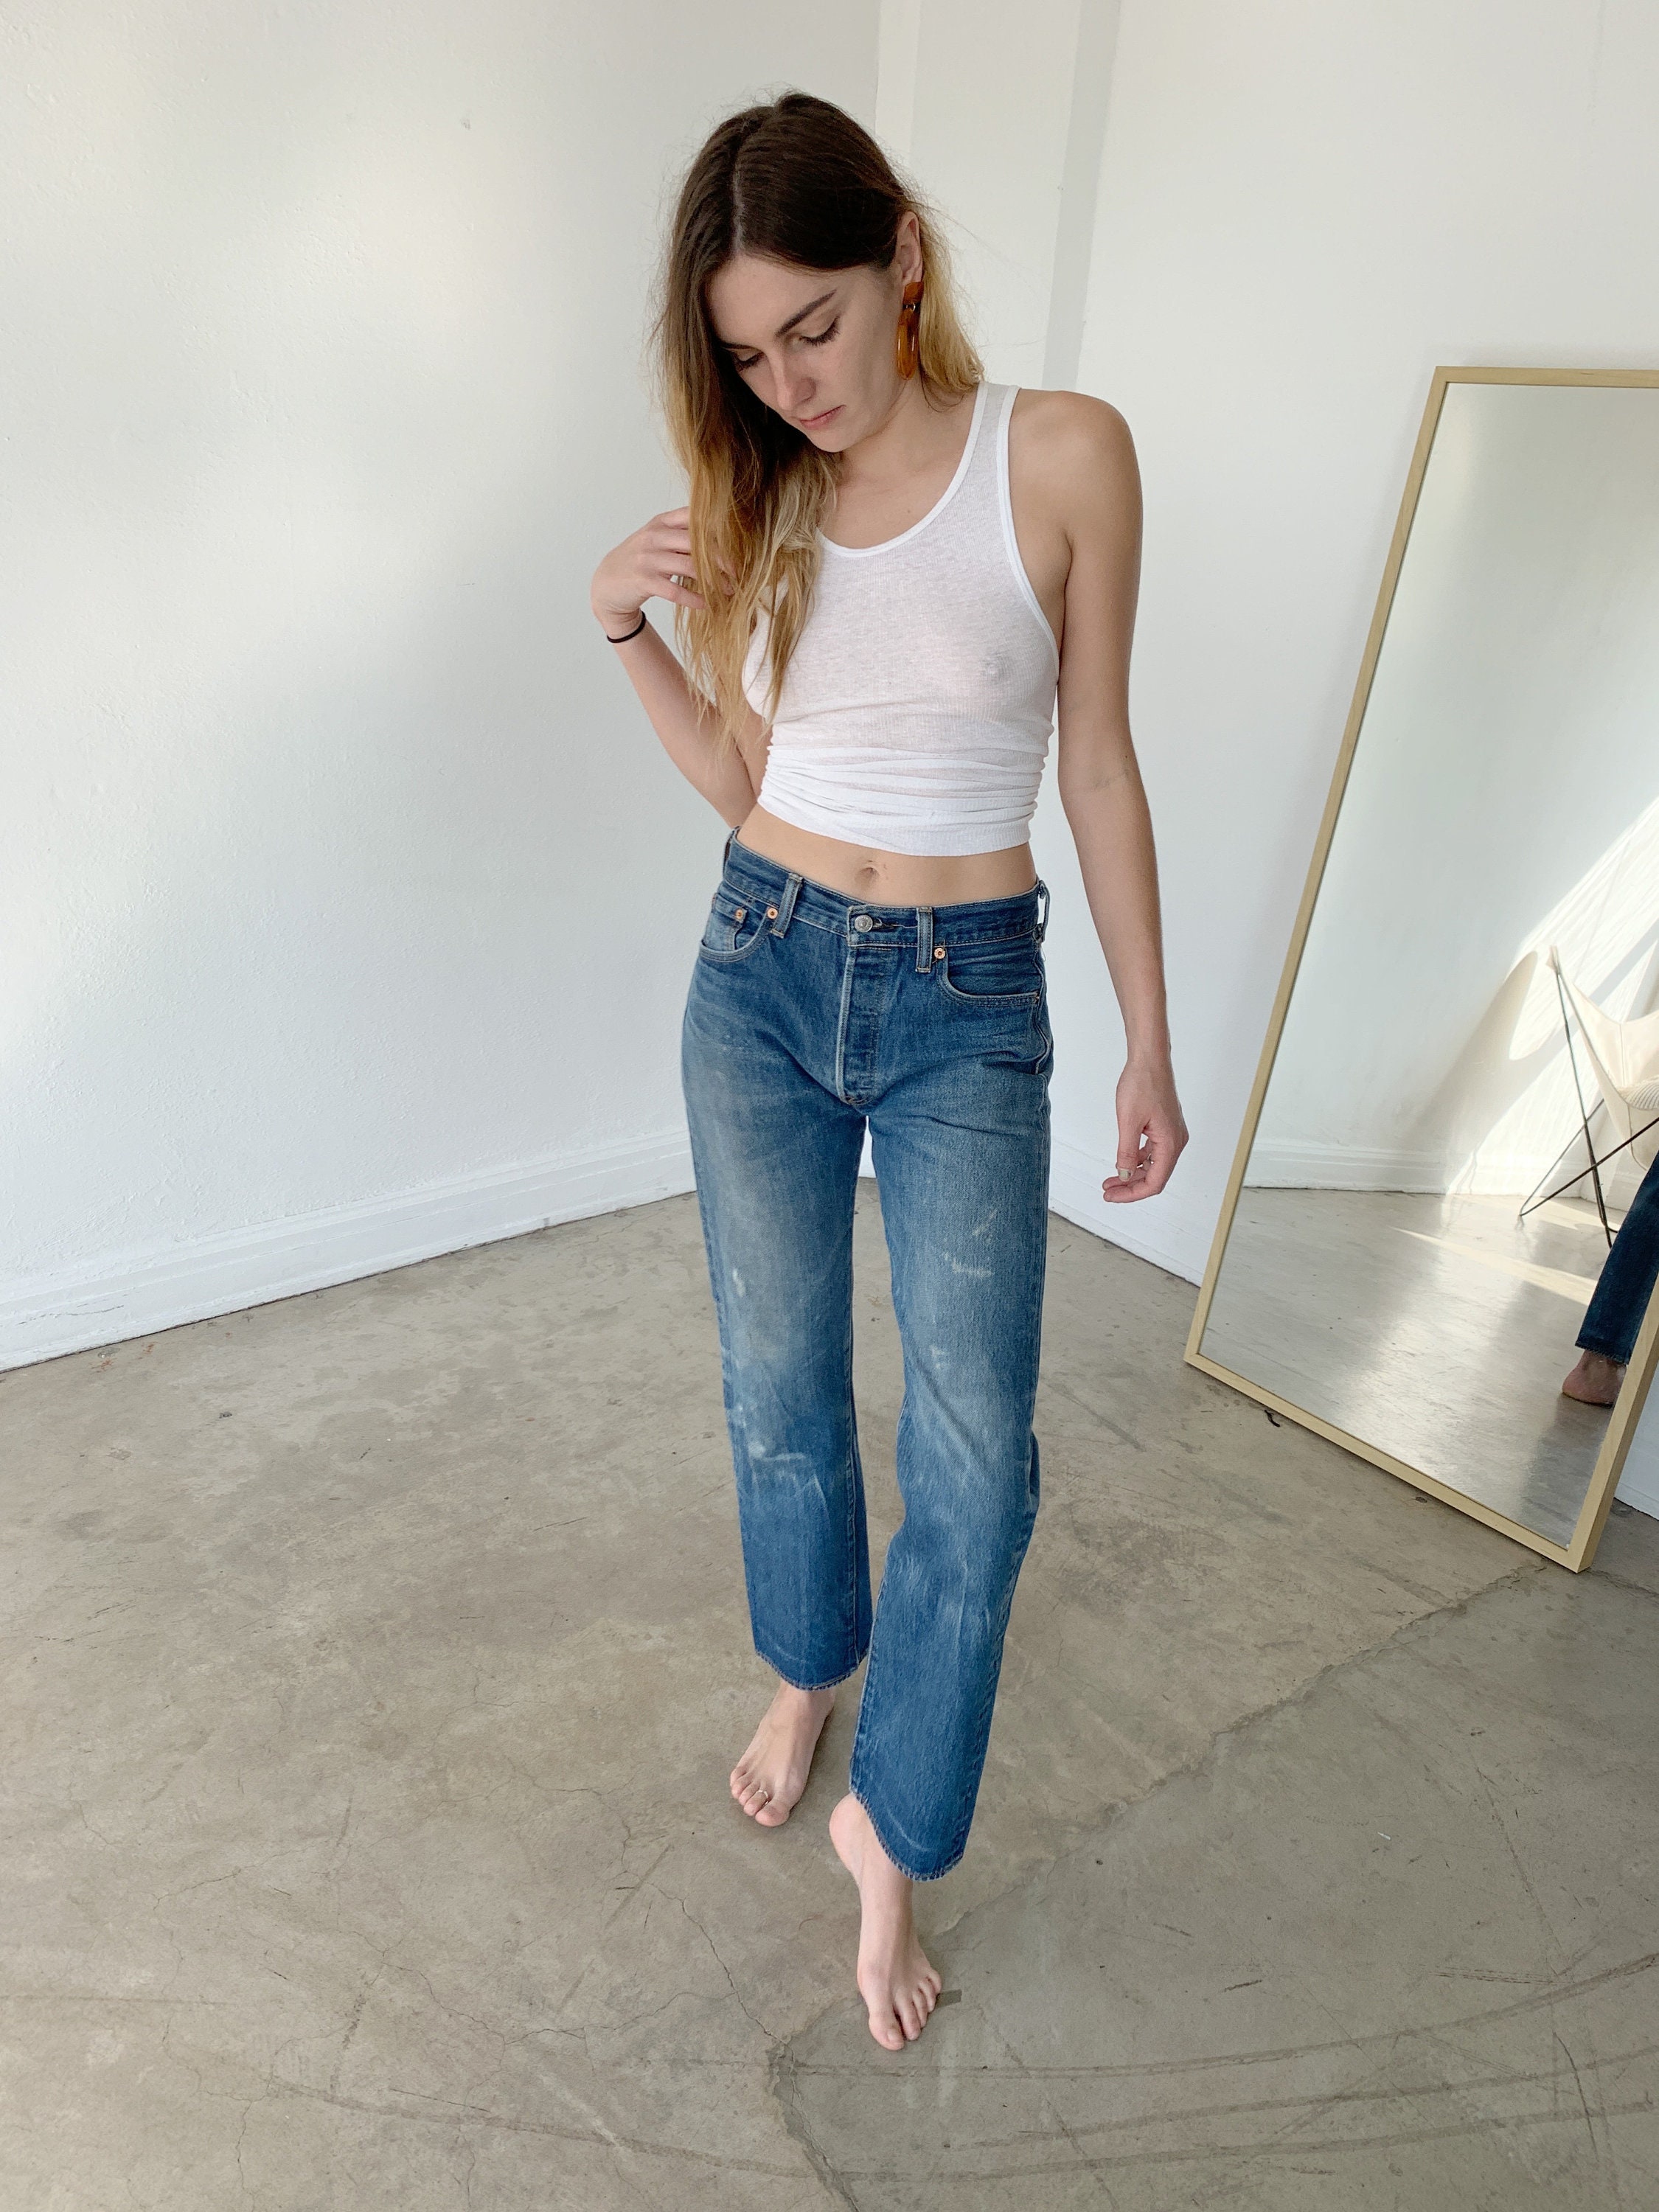 levis jeans size 28